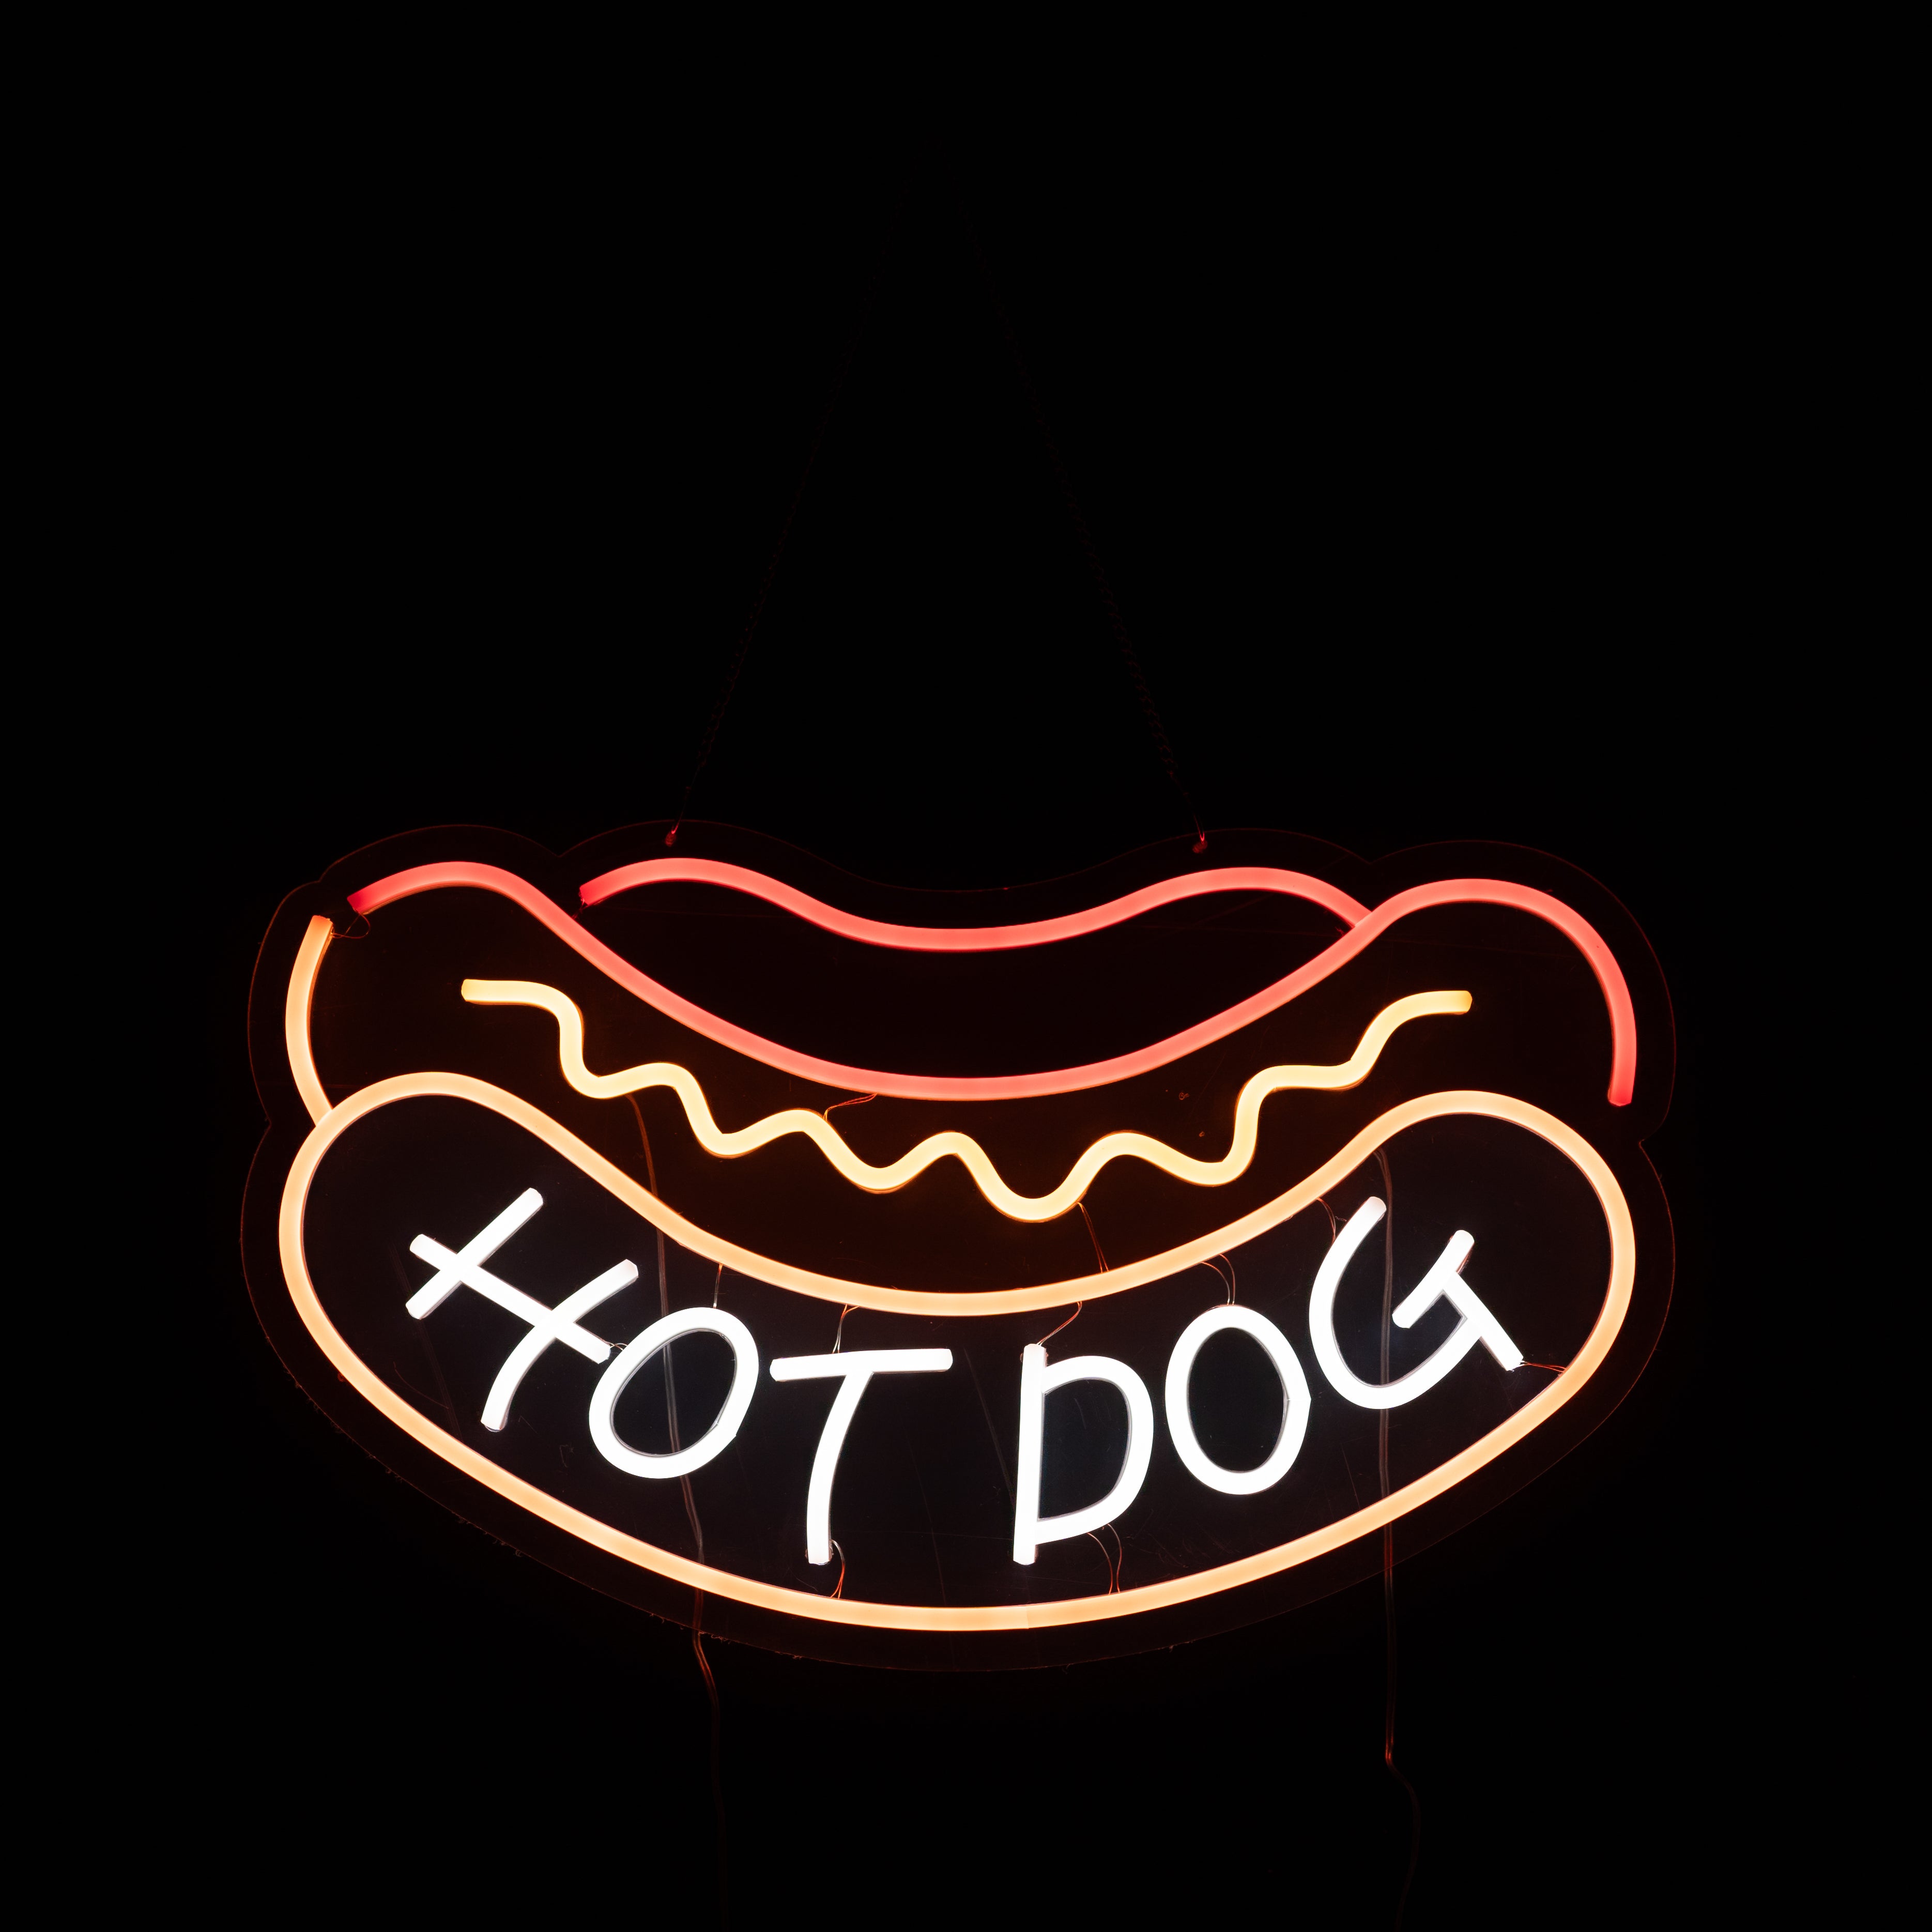 Hotdog Neon style LED light up sign